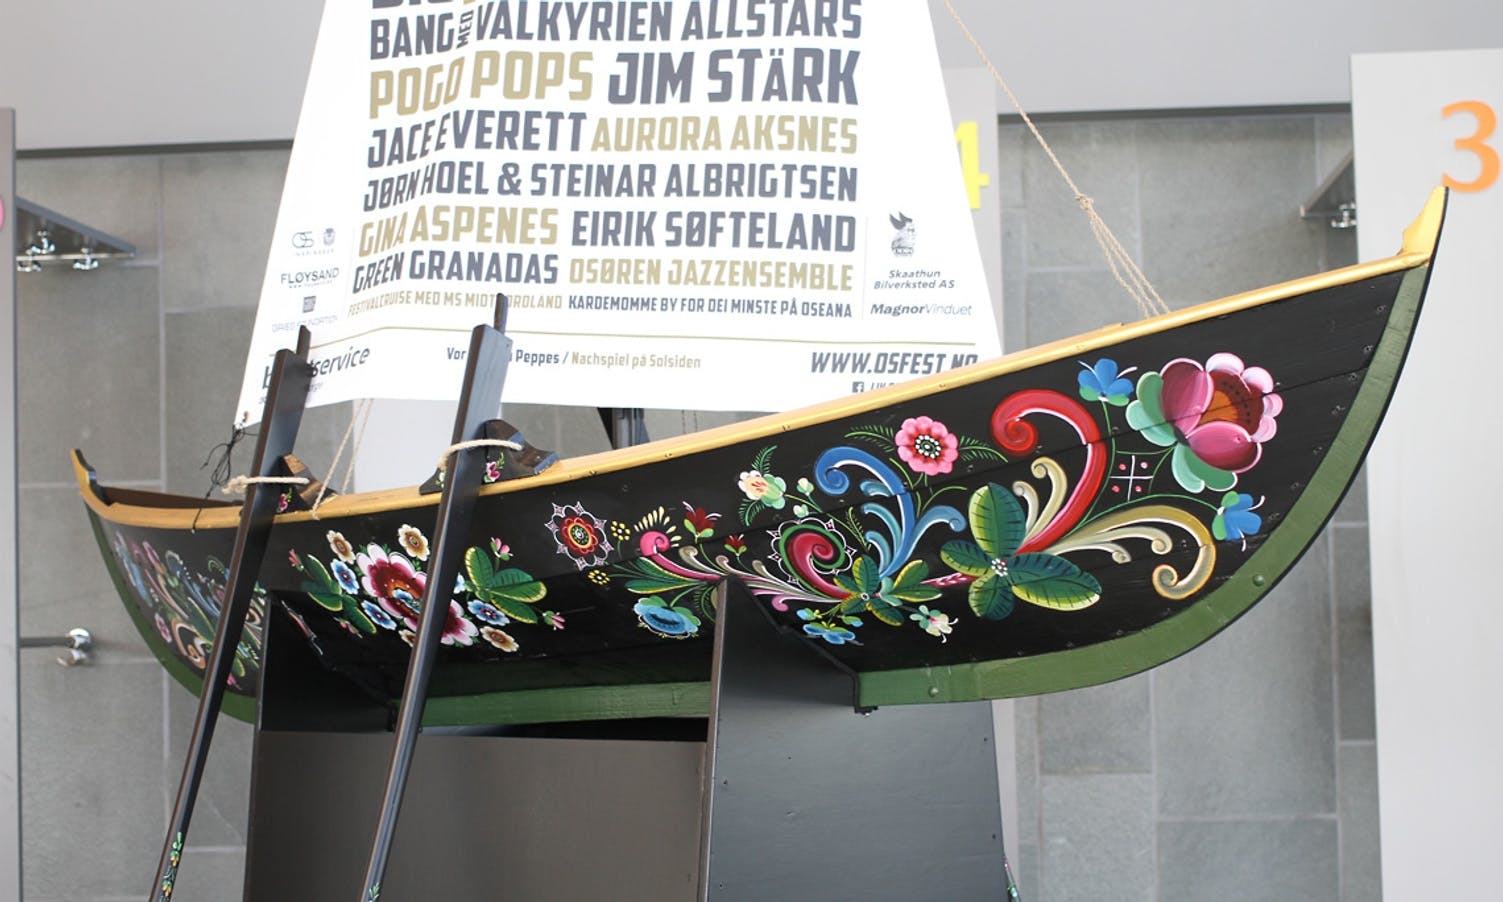 Rosemala båt på permanent utstilling